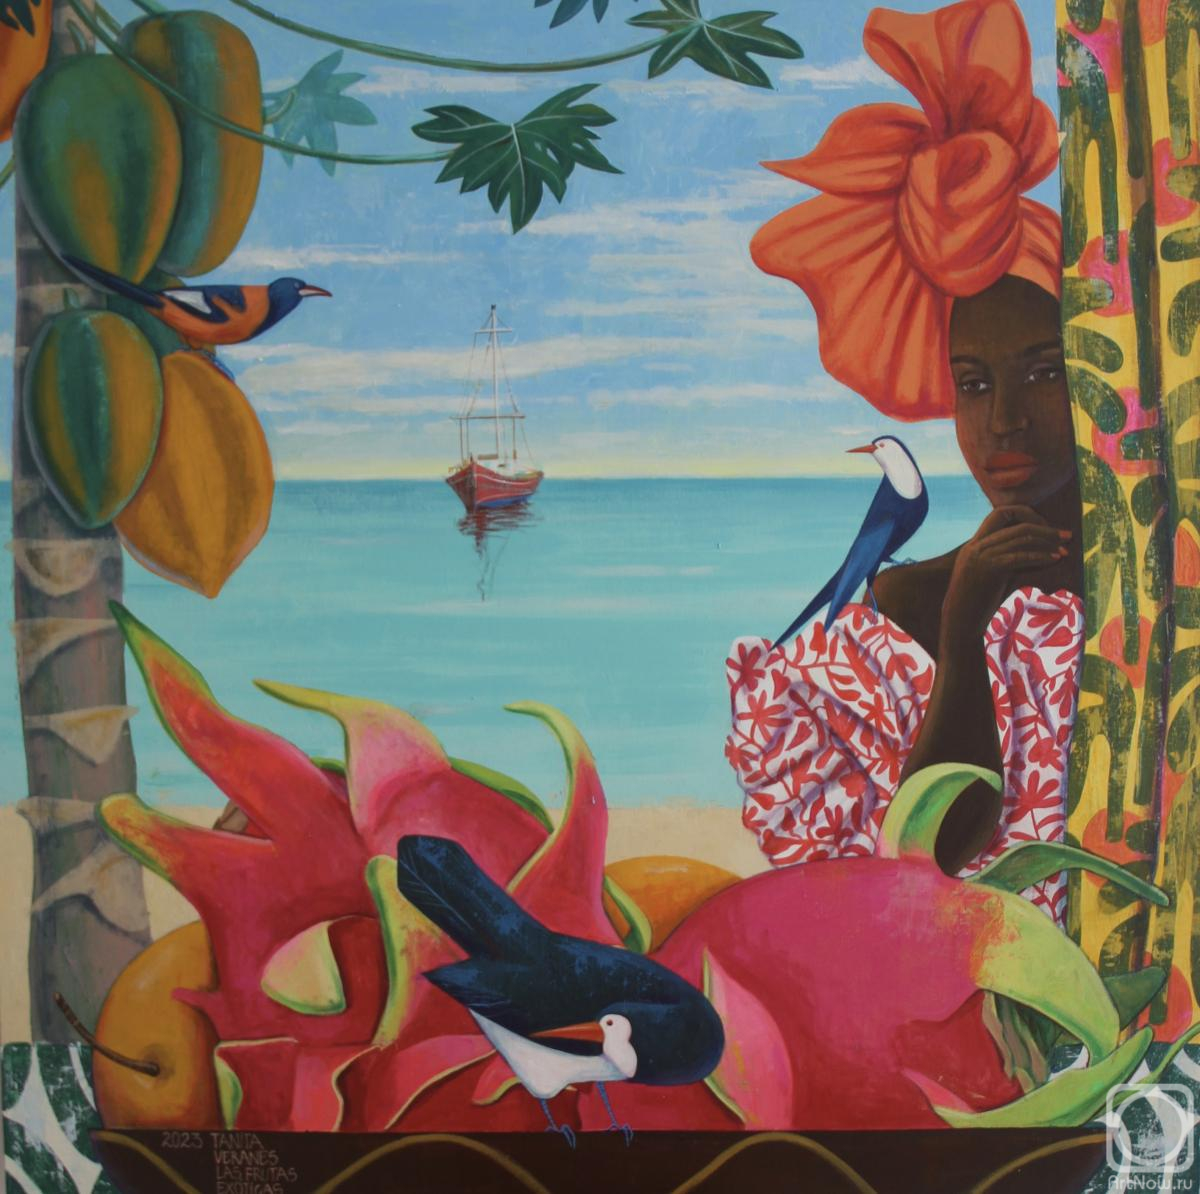 Экзотические фрукты» картина Веранес Татьяны (холст, акрил) — купить на ArtNow.ru